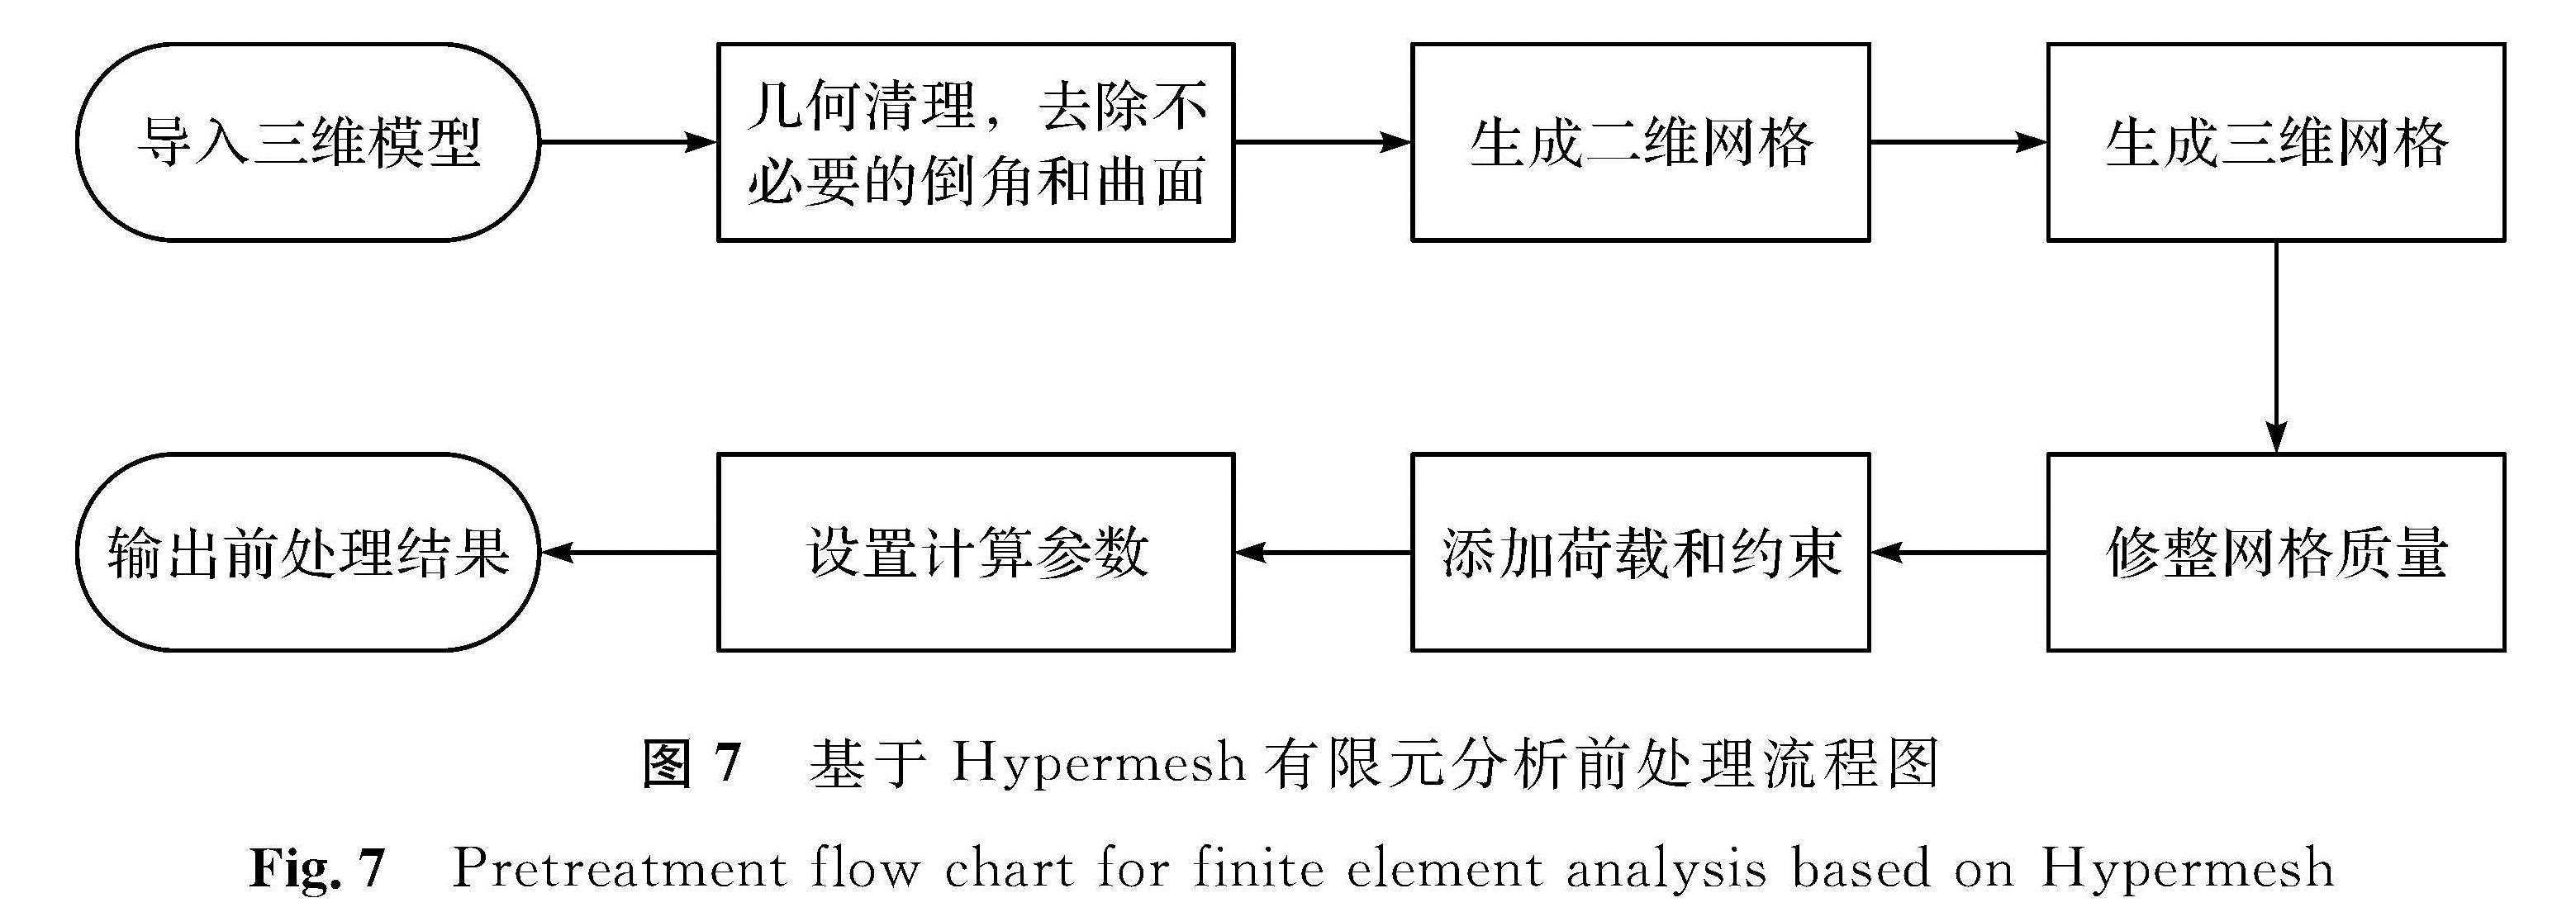 图7 基于Hypermesh有限元分析前处理流程图<br/>Fig.7 Pretreatment flow chart for finite element analysis based on Hypermesh